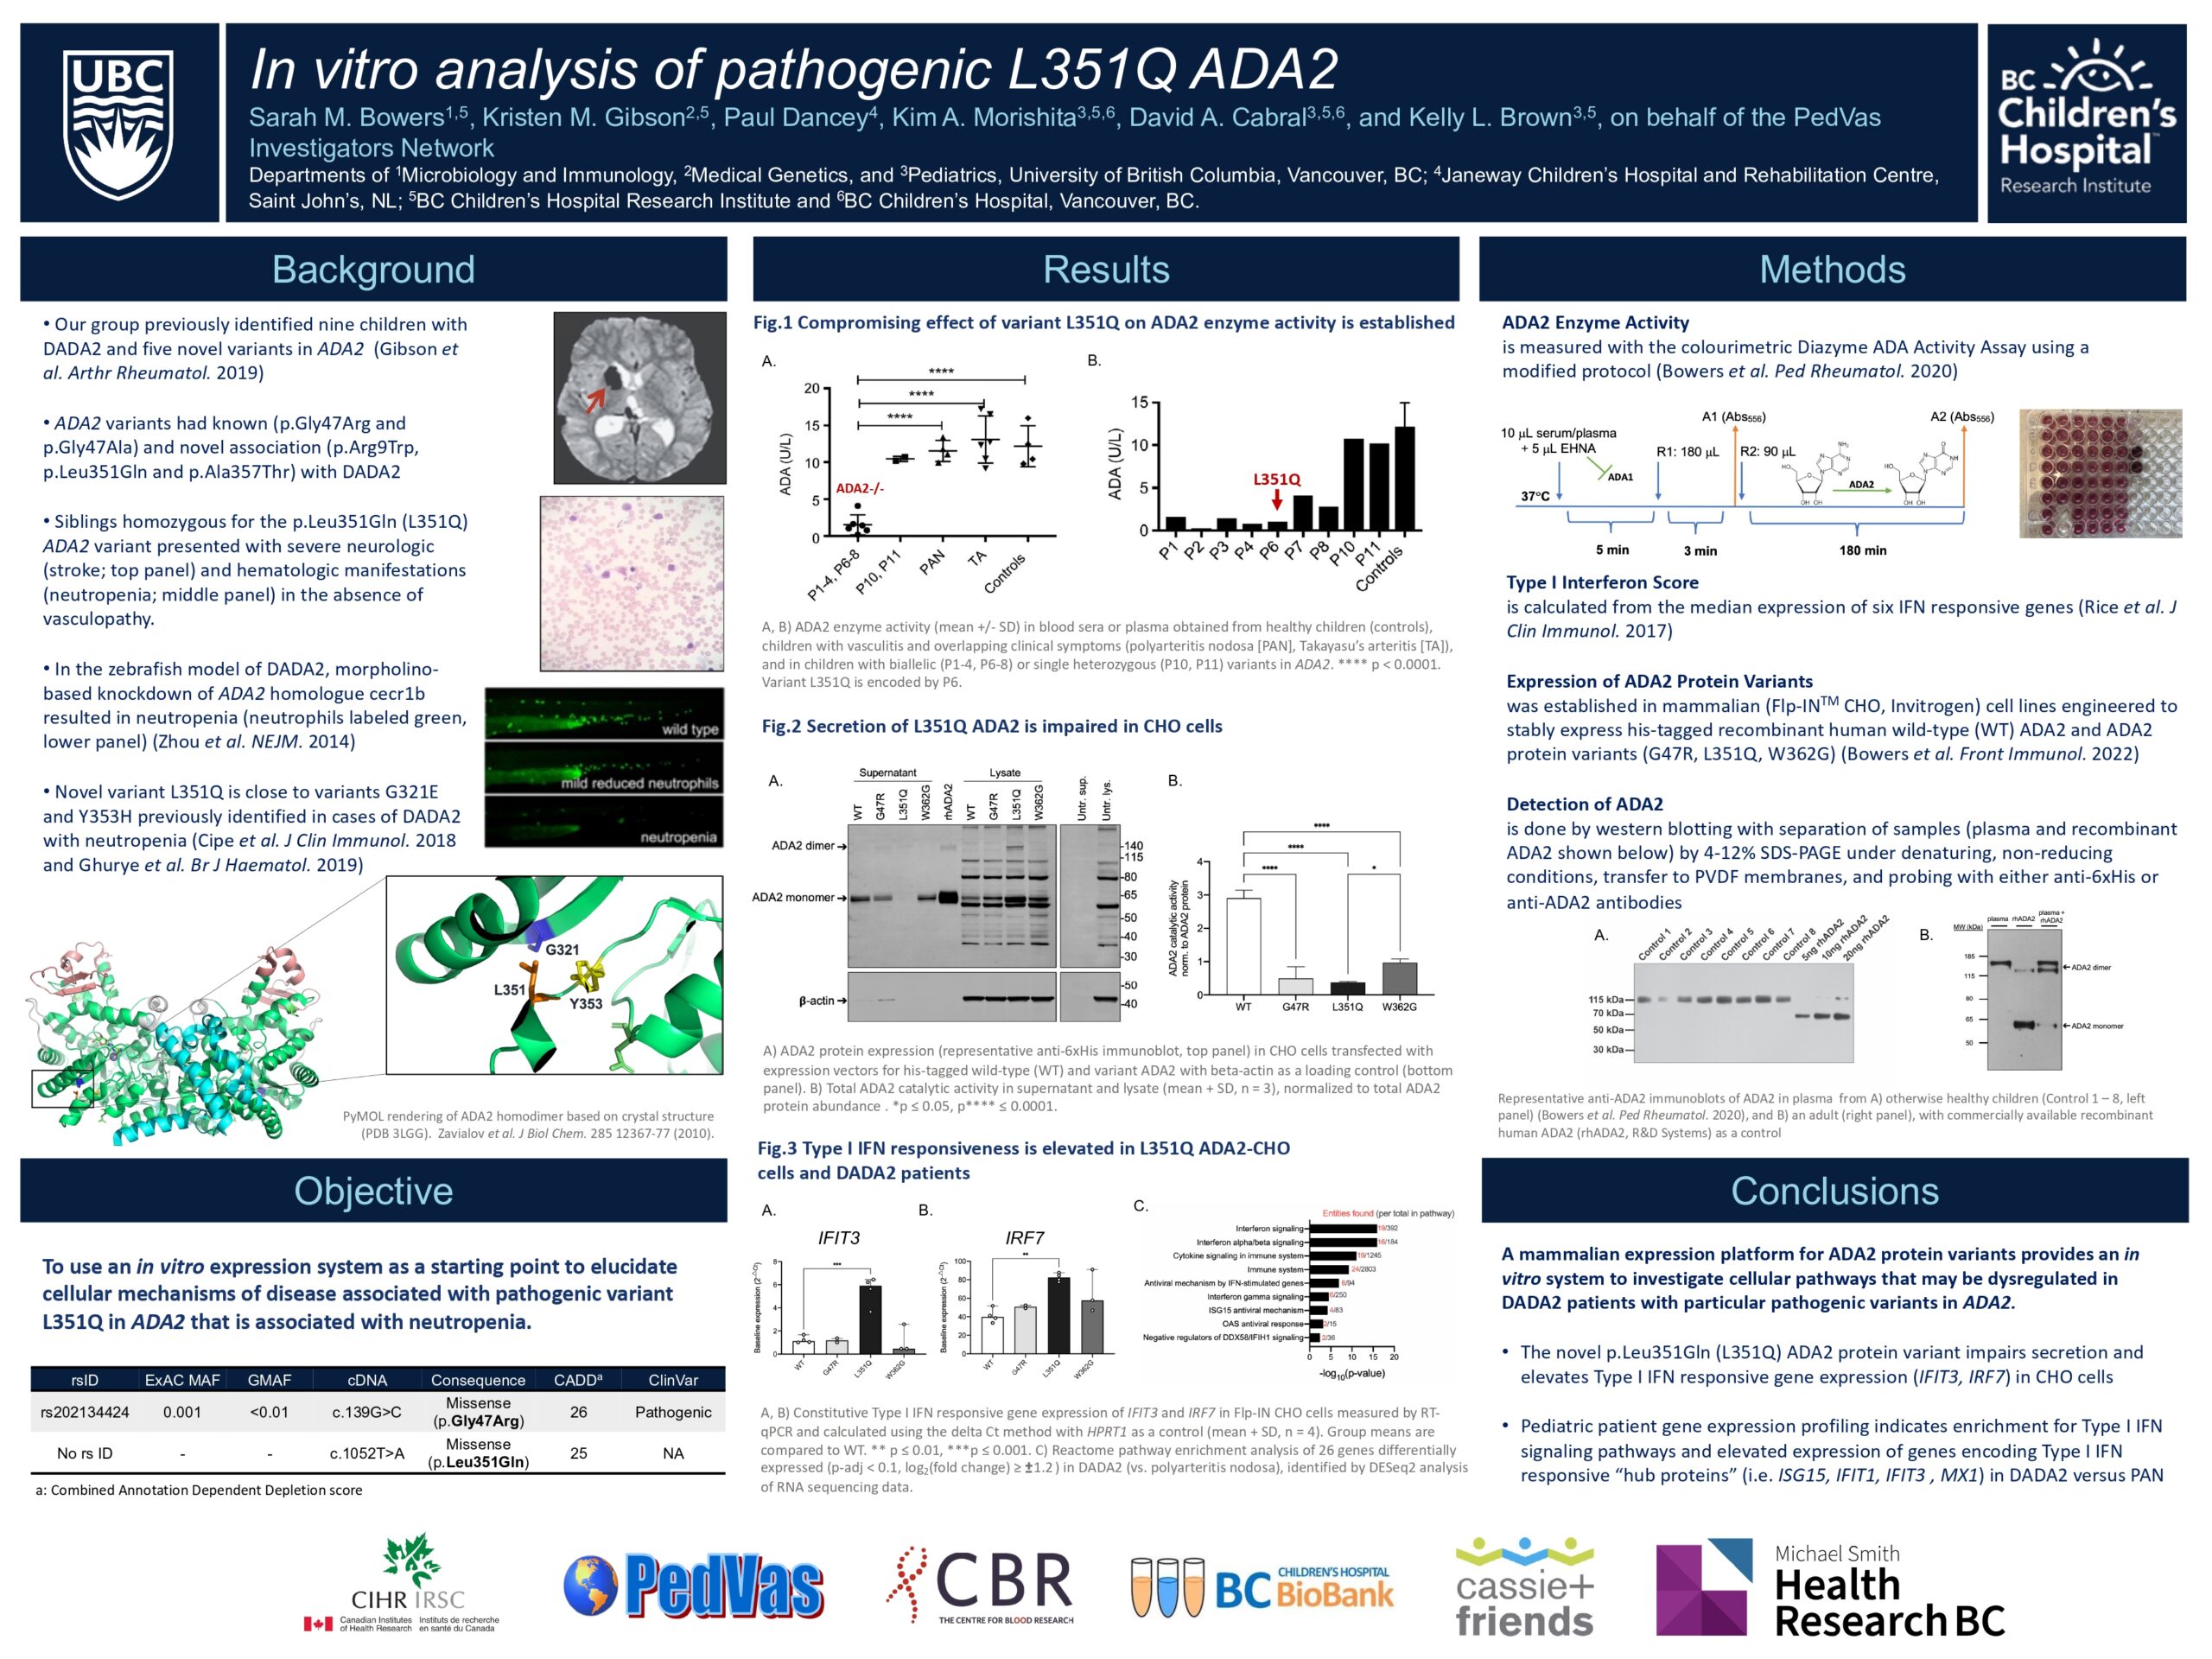 Sarah Bowers - In vitro analysis of pathogenic L351Q ADA2